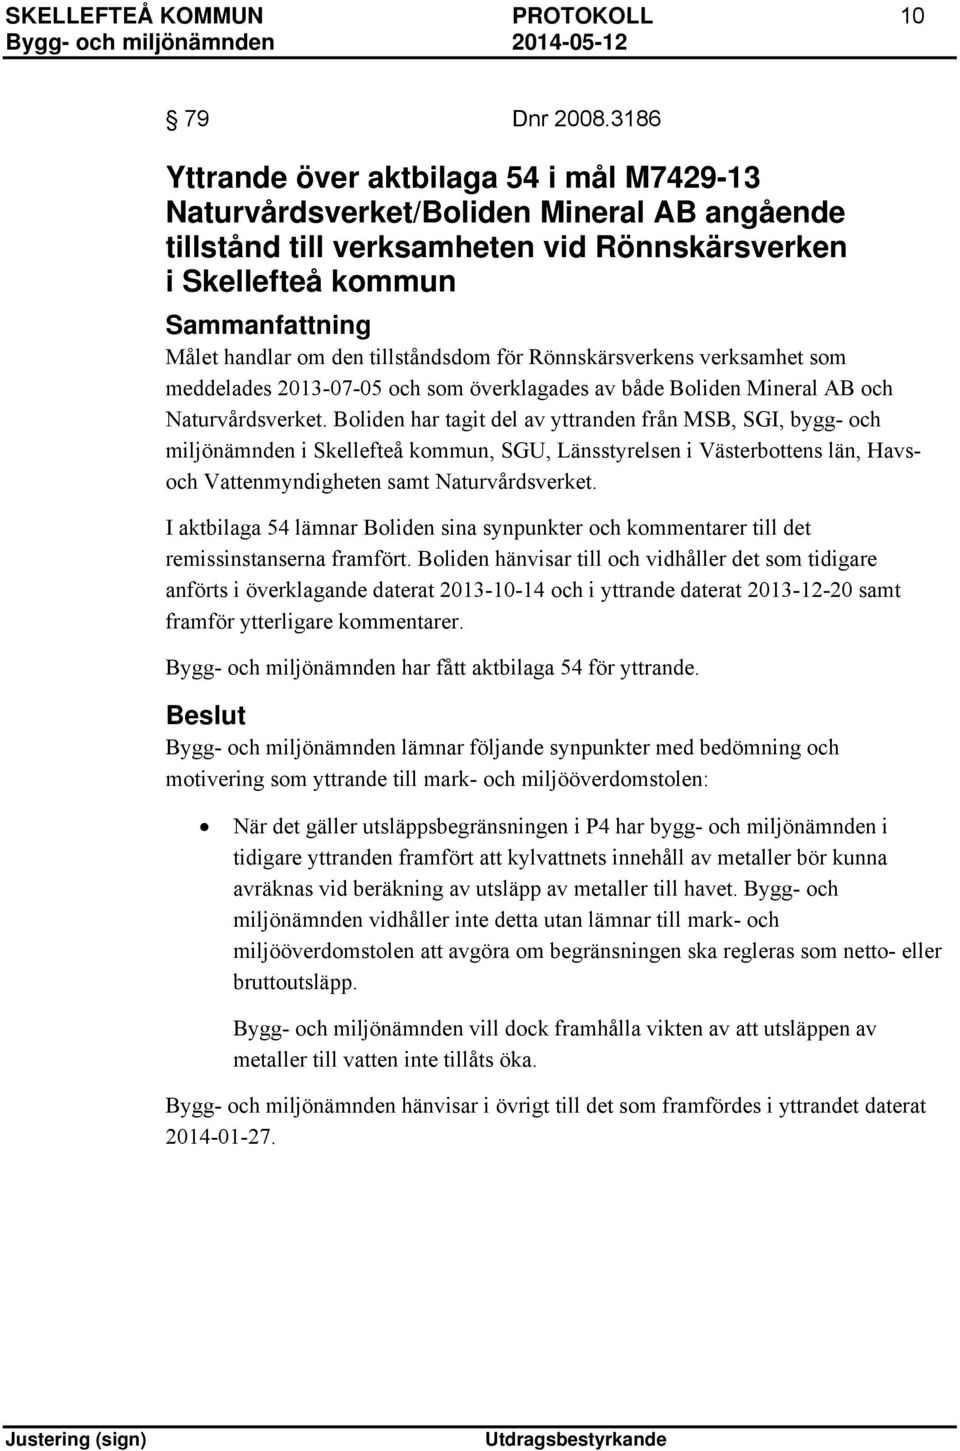 tillståndsdom för Rönnskärsverkens verksamhet som meddelades 2013-07-05 och som överklagades av både Boliden Mineral AB och Naturvårdsverket.